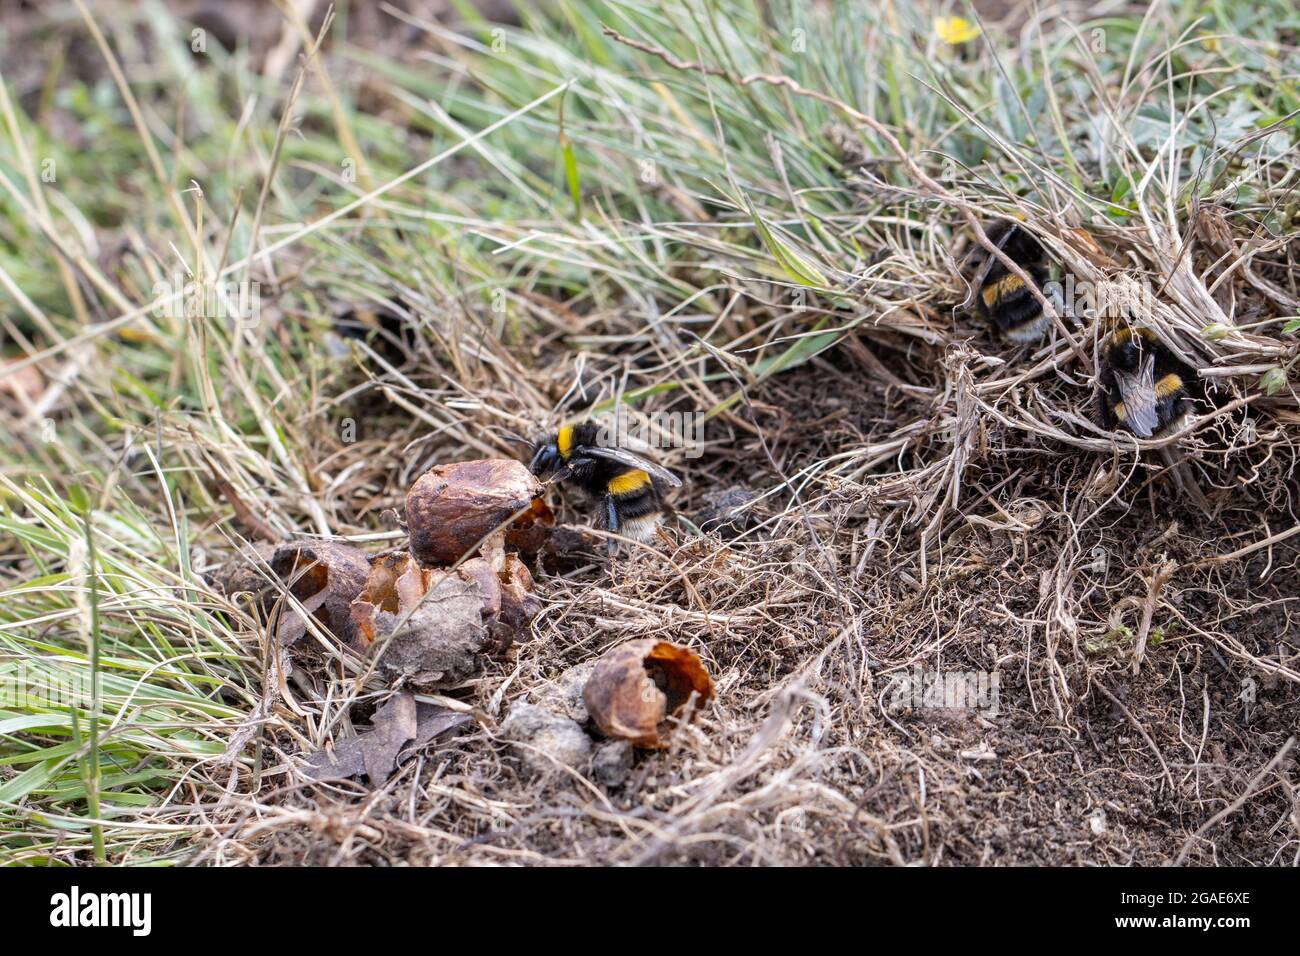 Des œufs d'abeilles bourdonnantes à queue de chamois sur le bord d'un nid de lapin qui semble avoir été prédaté (Bombus terrestris), West Yorkshire, Royaume-Uni Banque D'Images